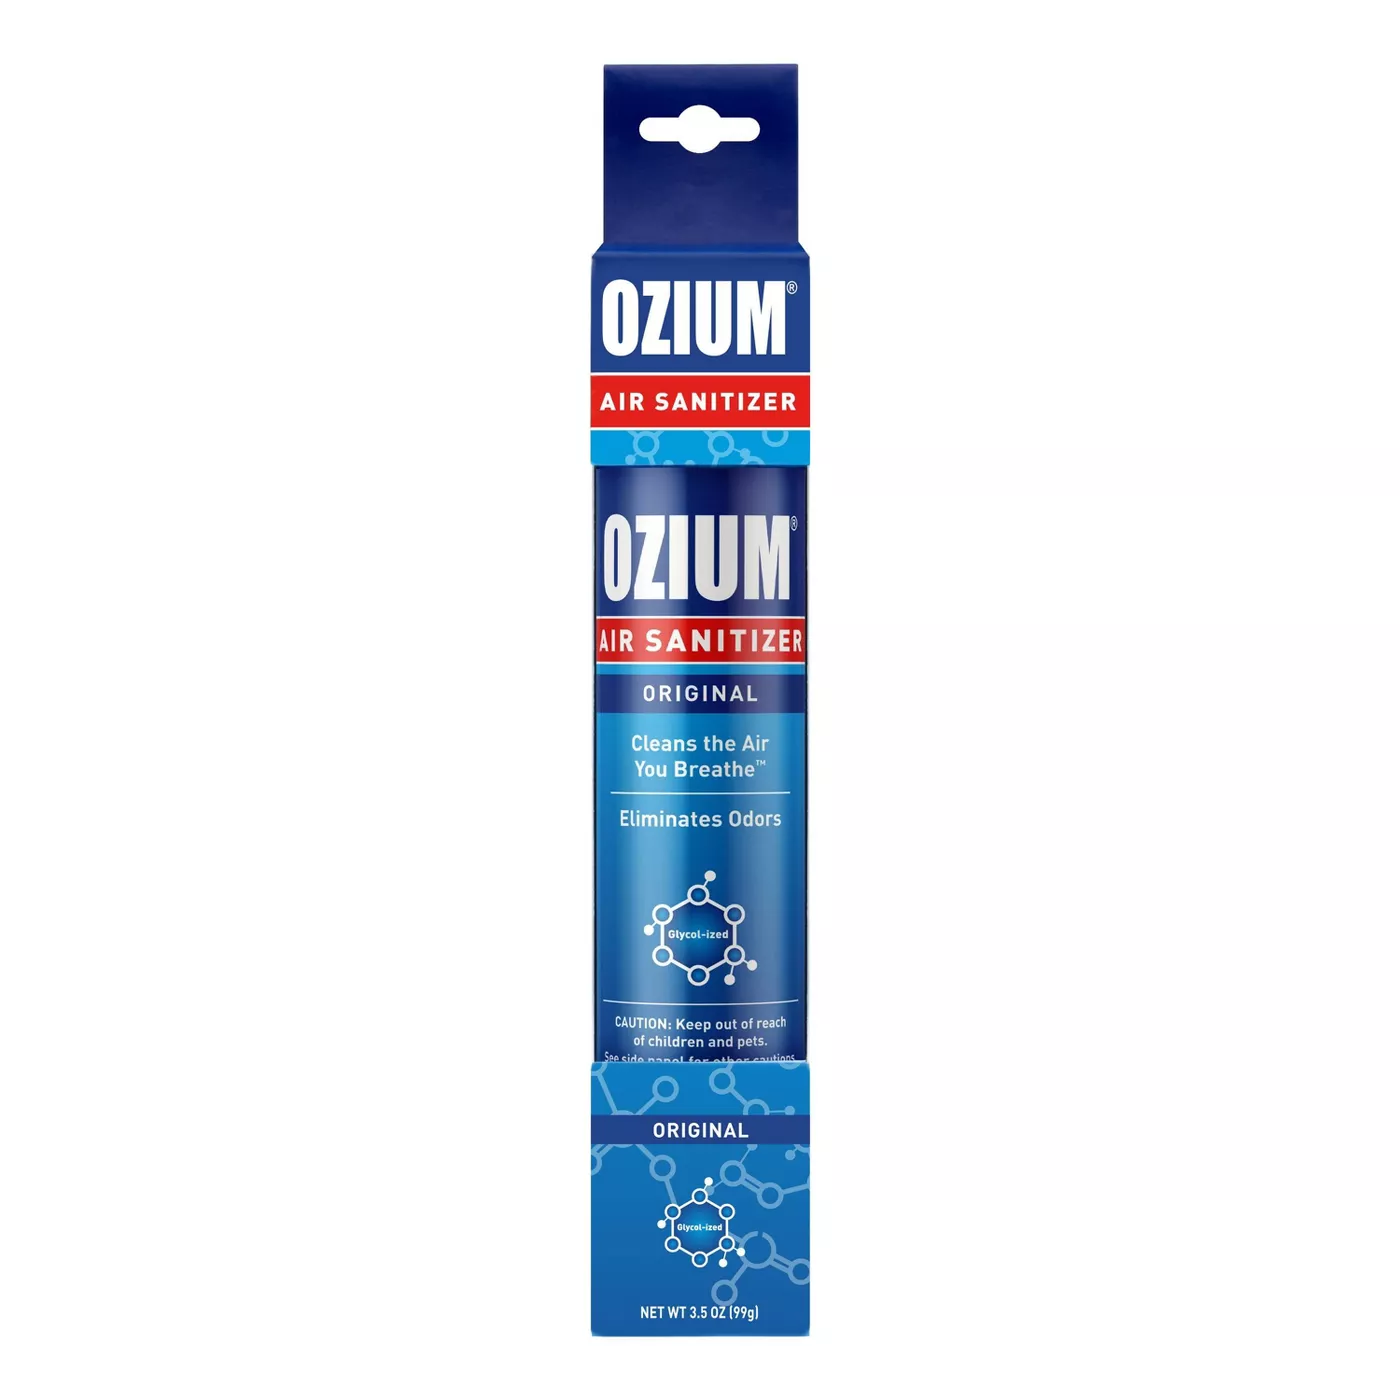 ozium original scent air sanitizer box